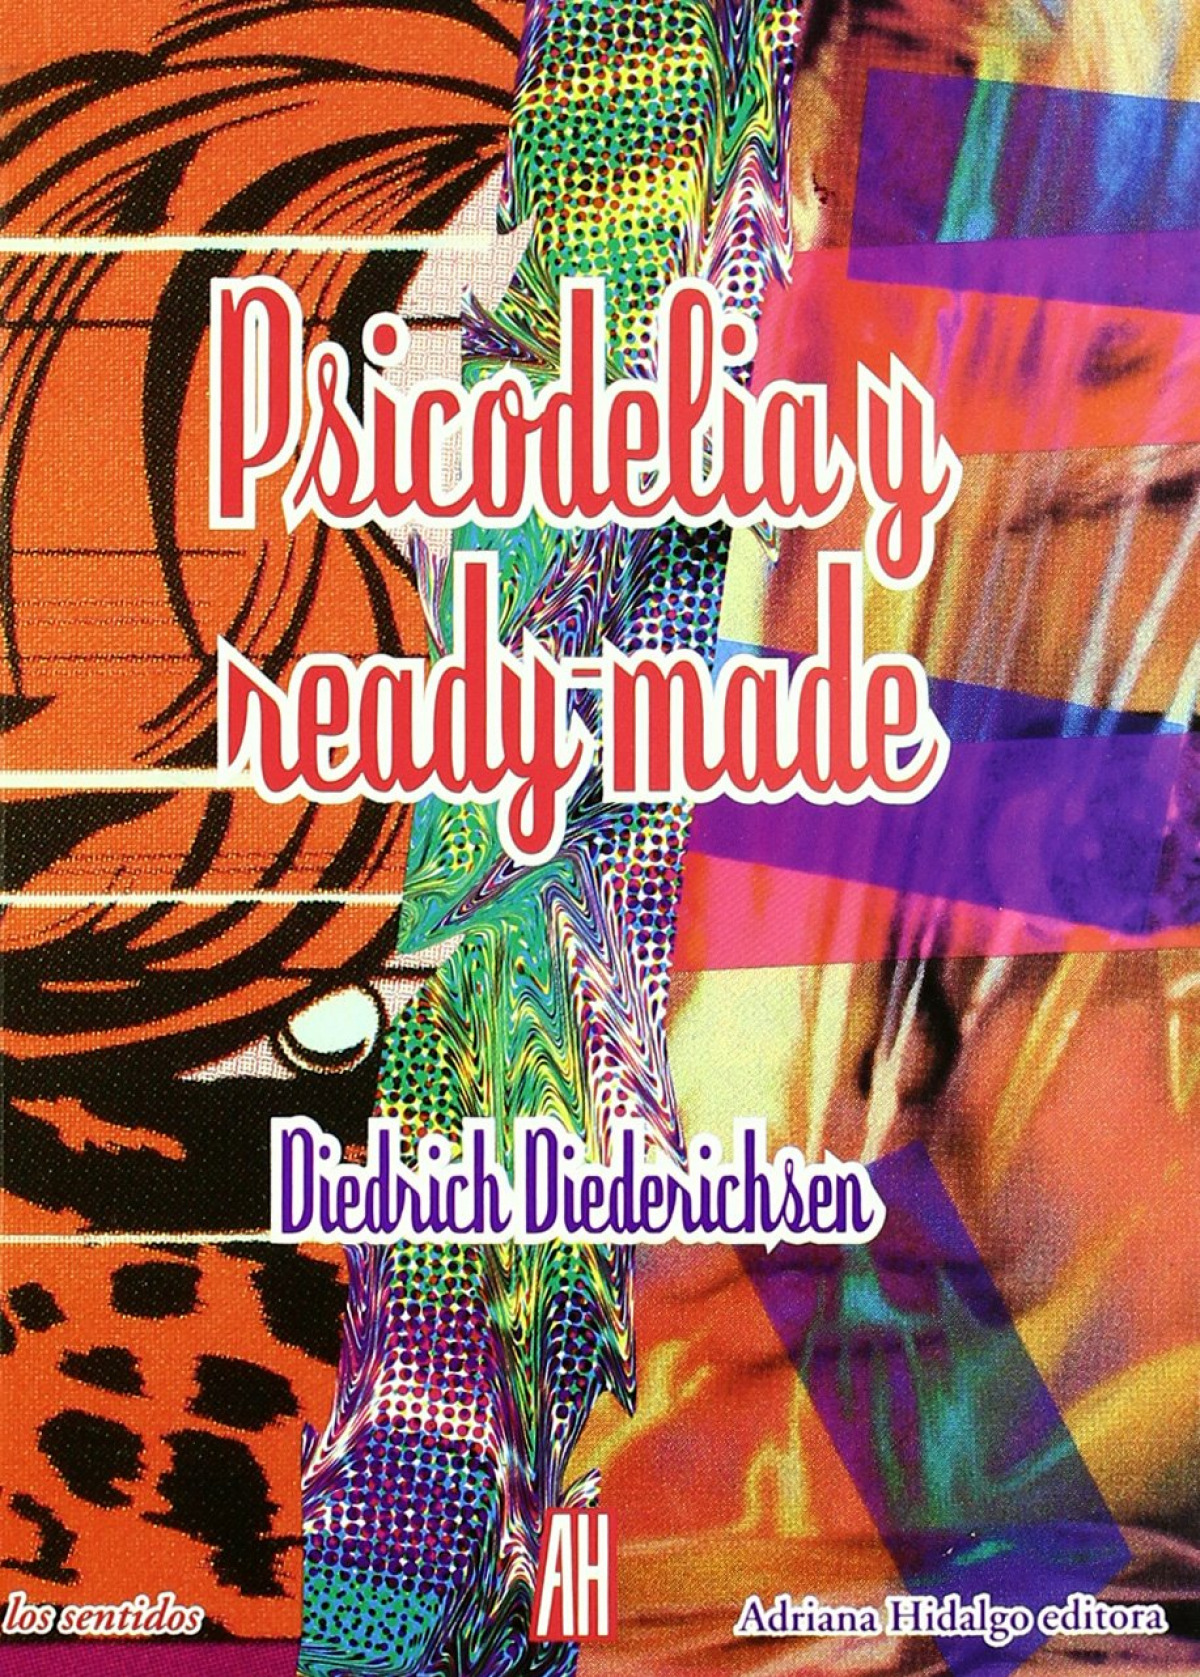 Psicodelia y ready-made - Diederichsen Diedrich